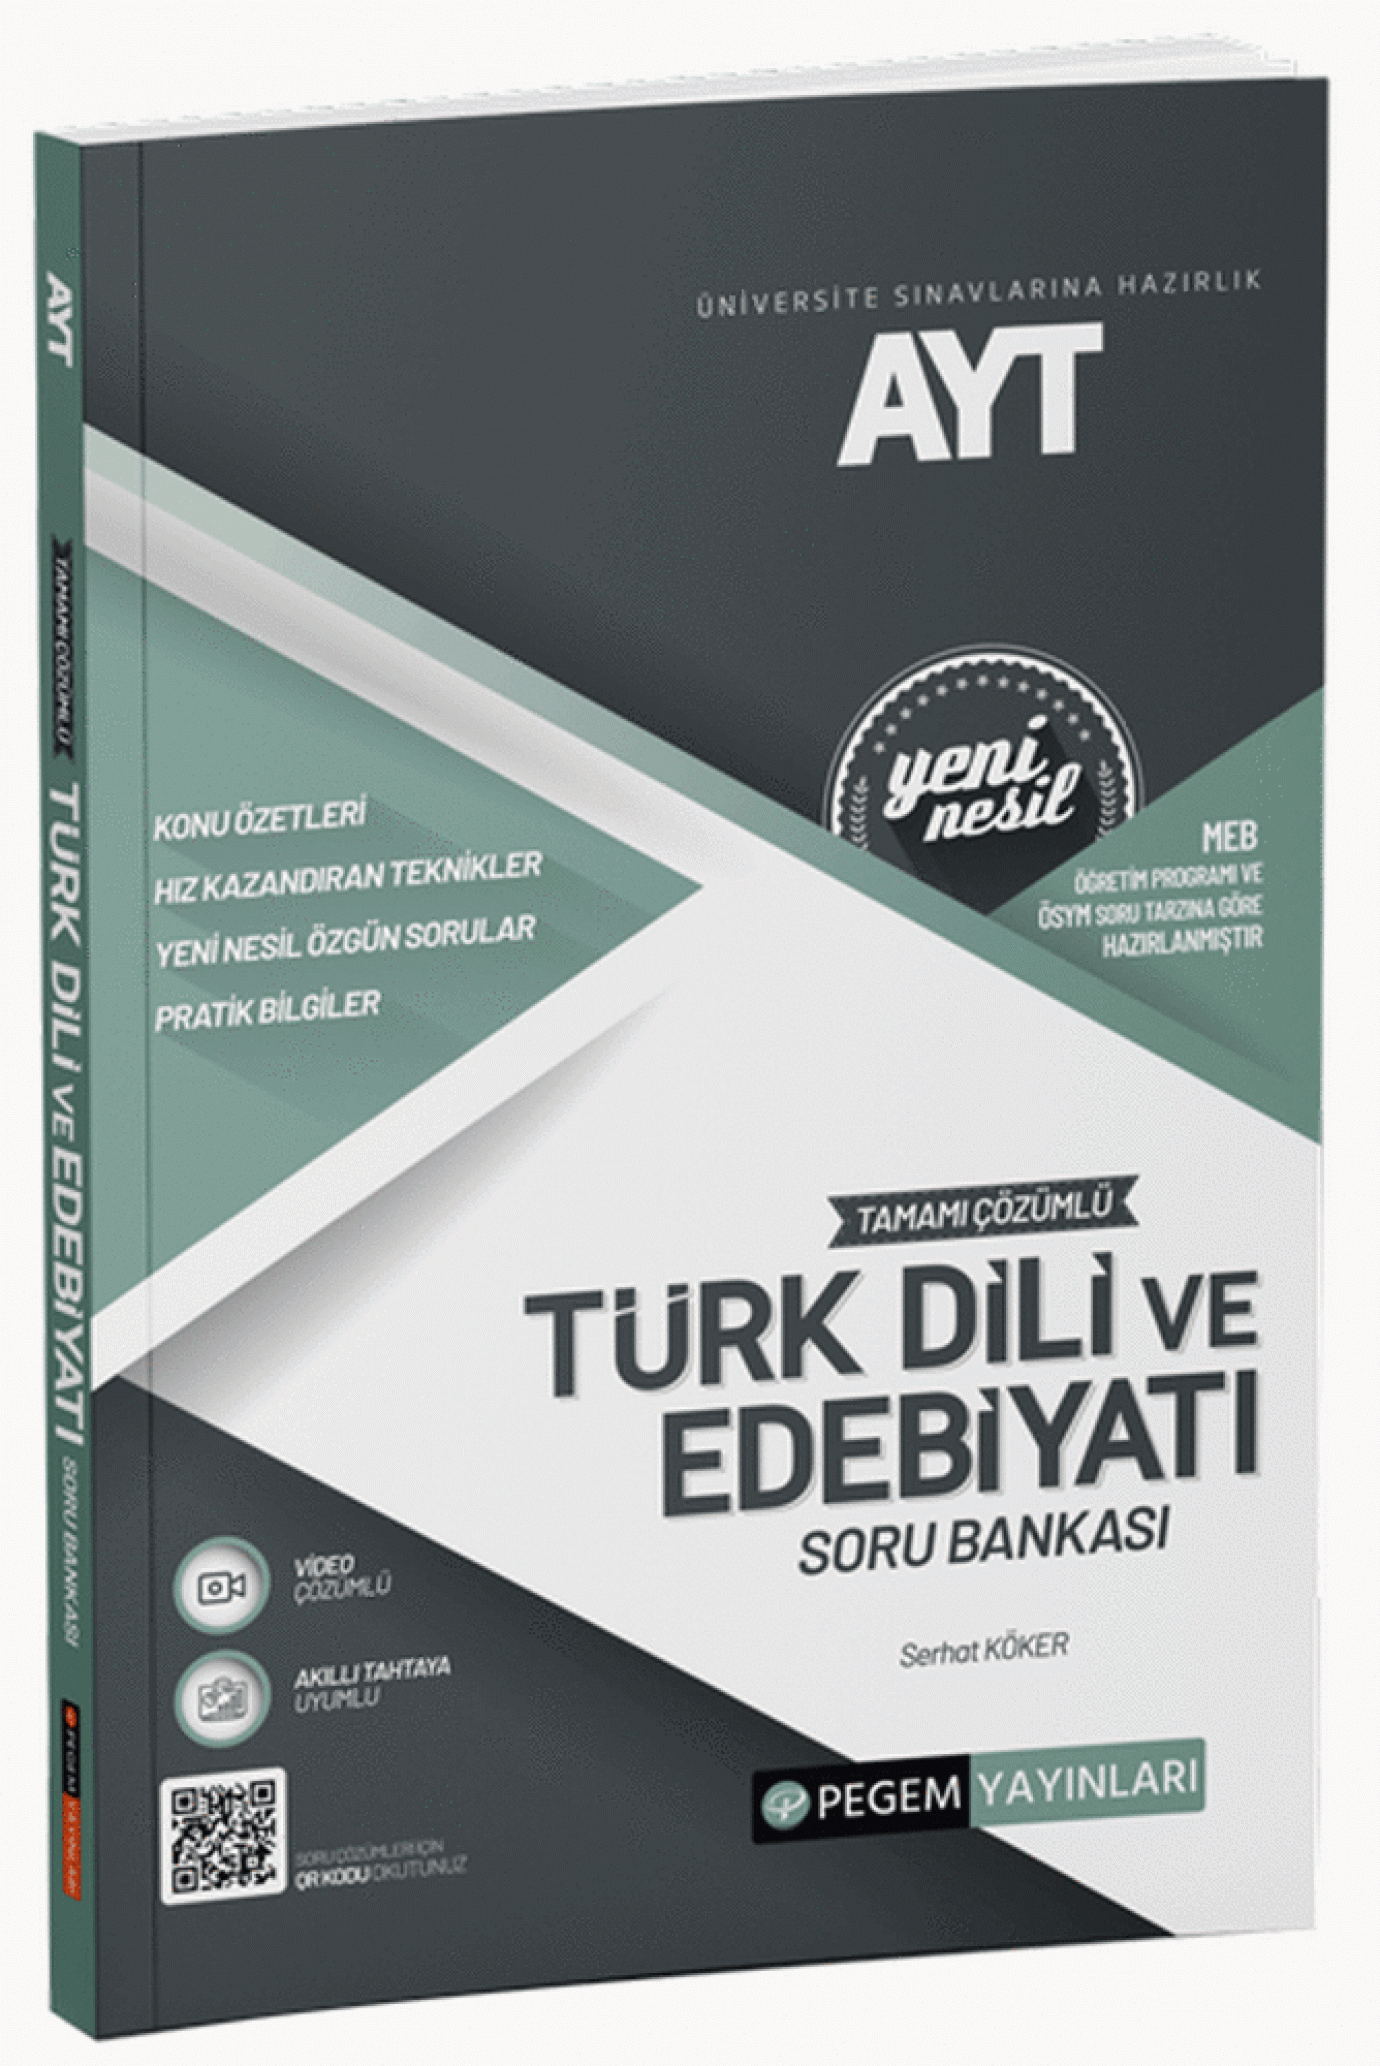 2022 AYT Tamamı Çözümlü Türk Dili Ve Edebiyatı Soru Bankası